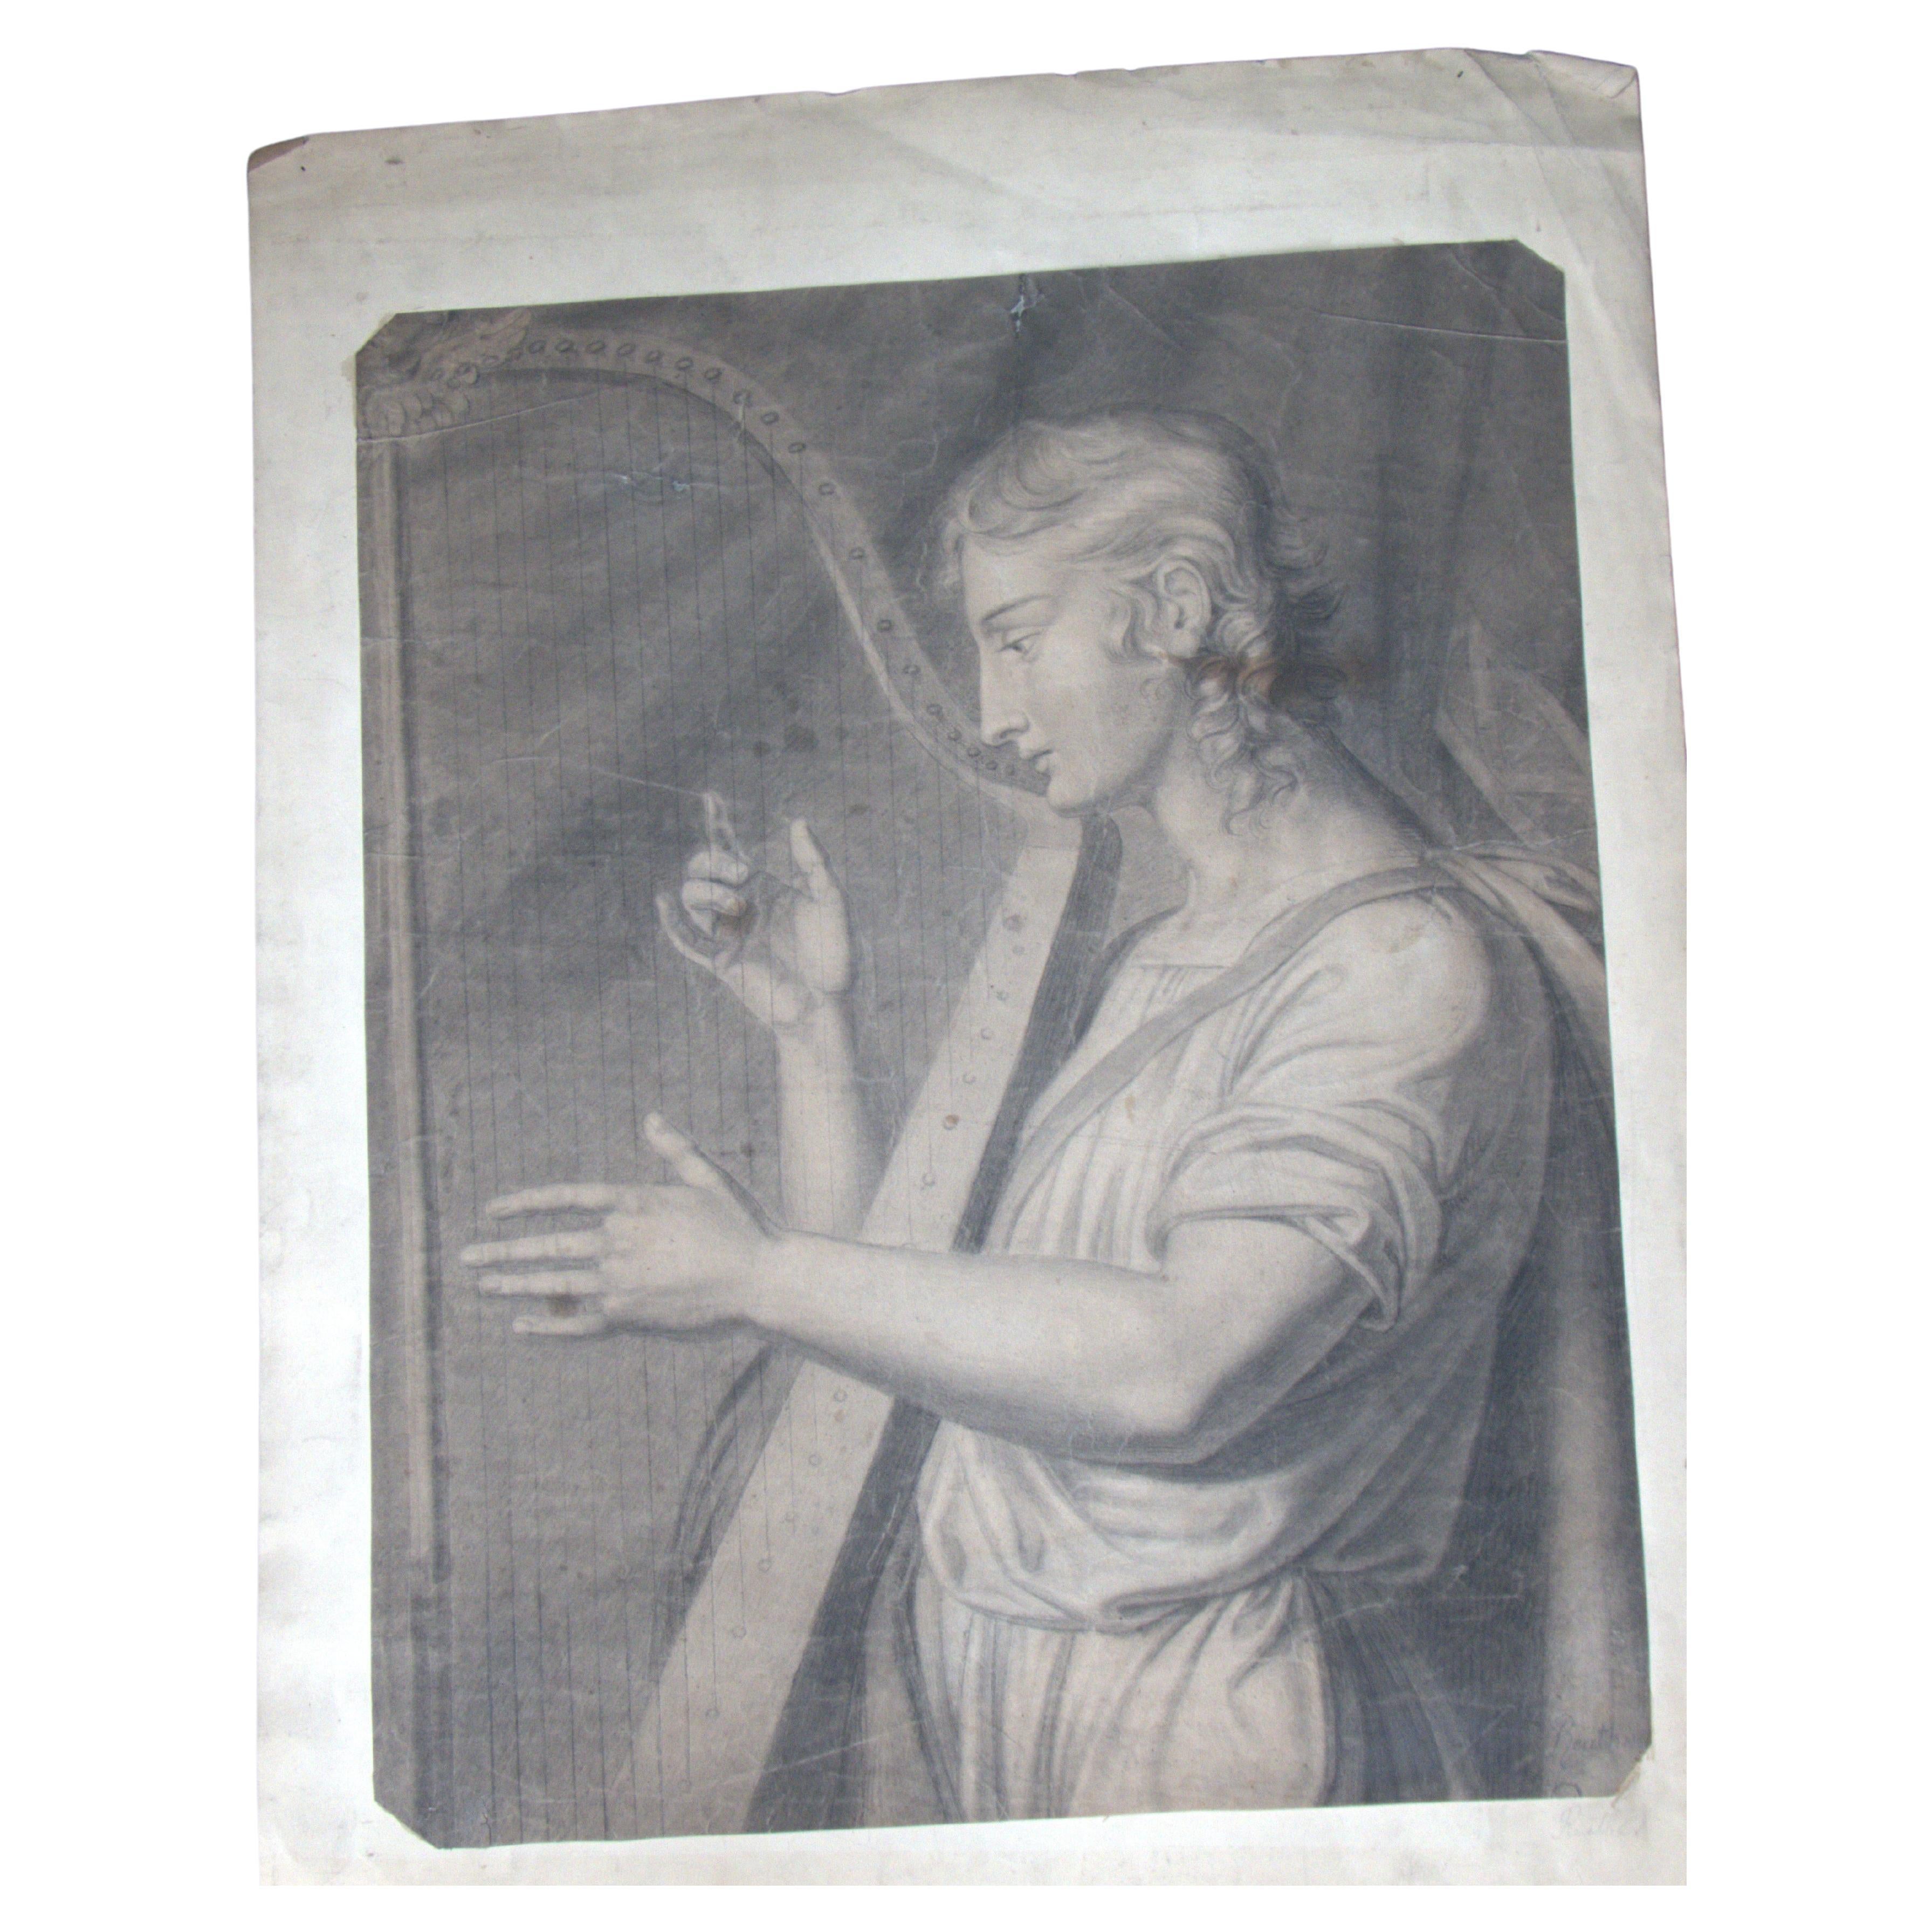 Harpist, Zeichnung des 18. Jahrhunderts